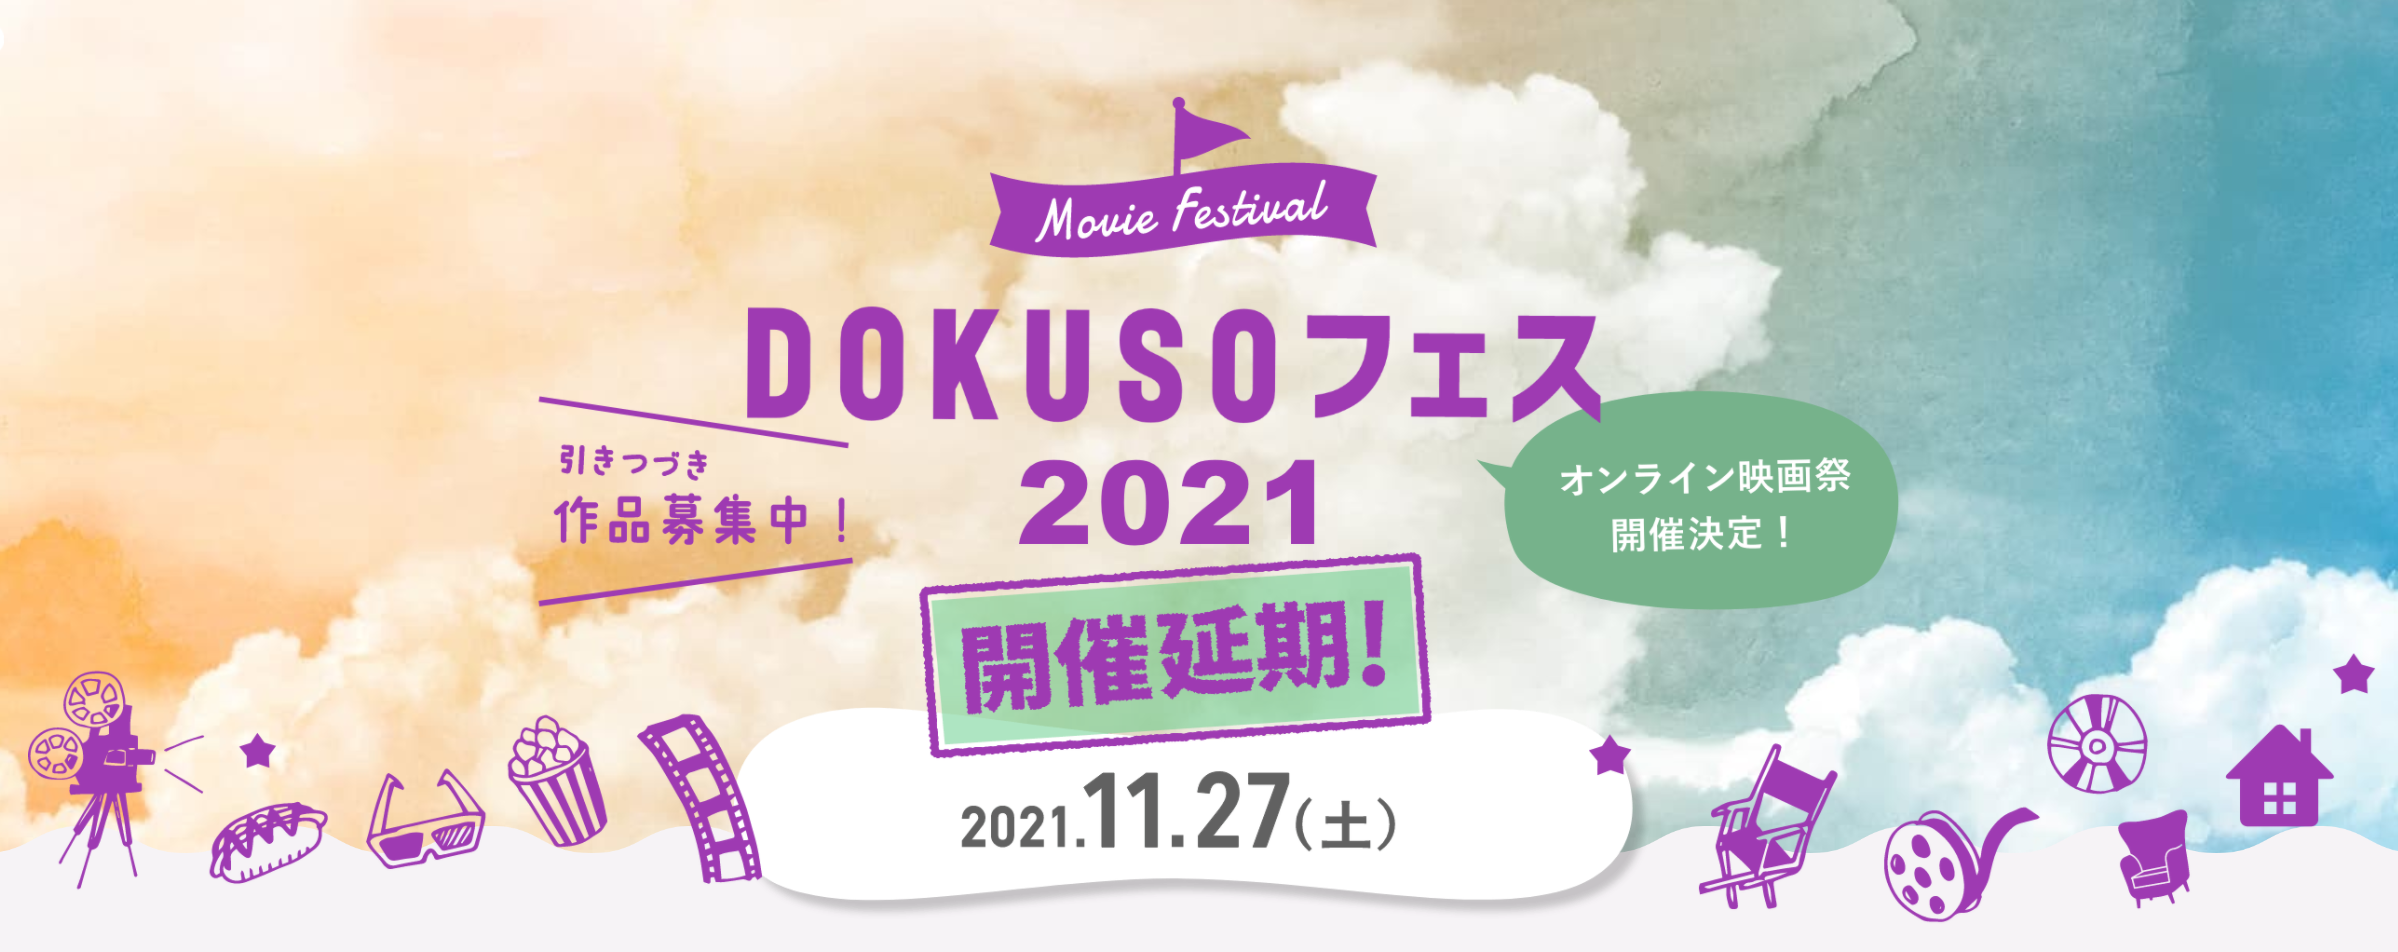 おうちで楽しめるオンライン映画祭「DOKUSOフェス2021」開催延期と作品再募集のお知らせ